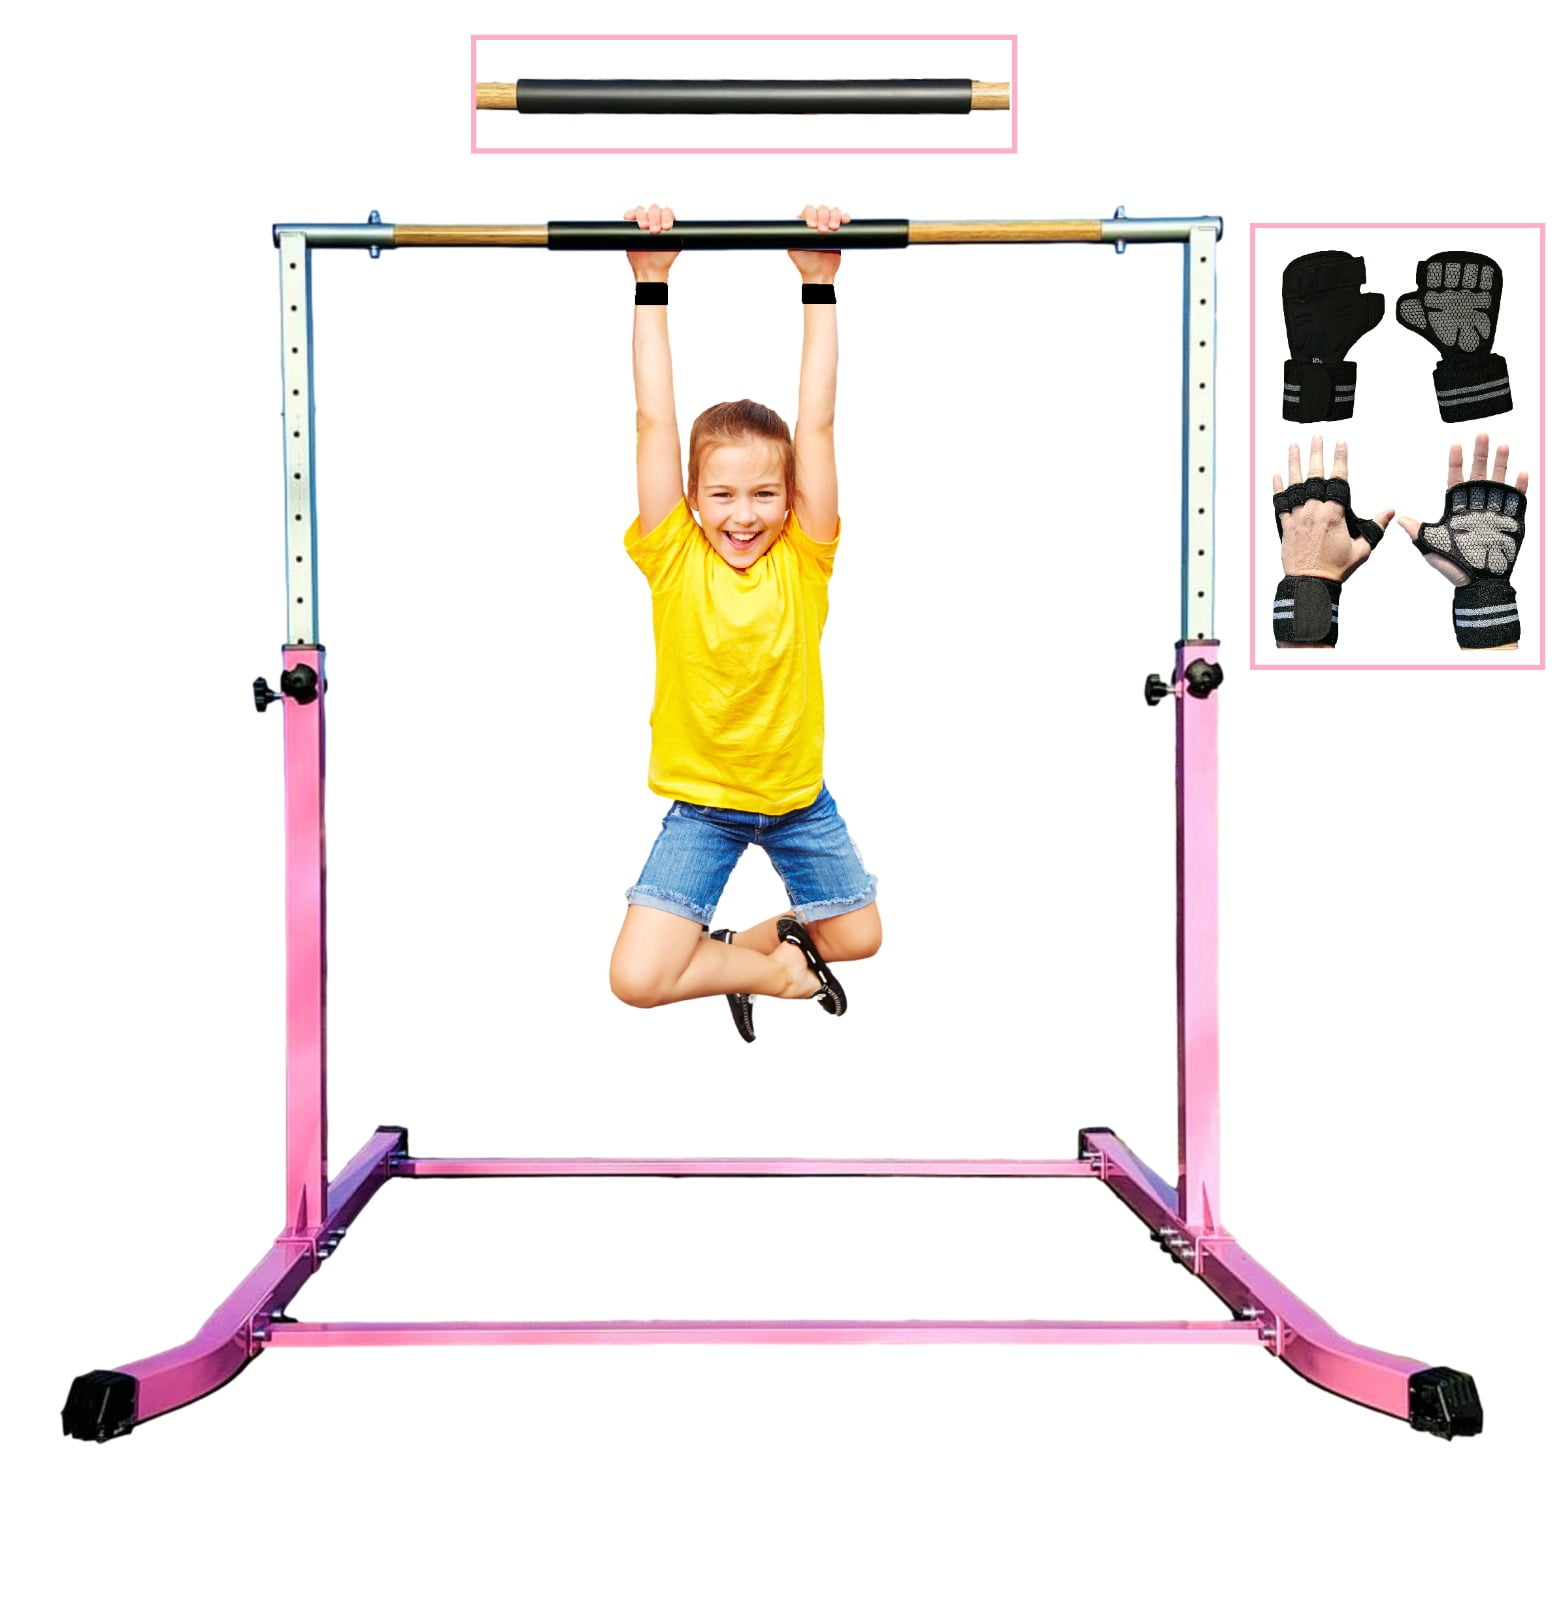 ToyKraft Horizontal Gymnastics Kip Bar Jungle Gym Adjustable Up to 5FT 4x6 Mat 